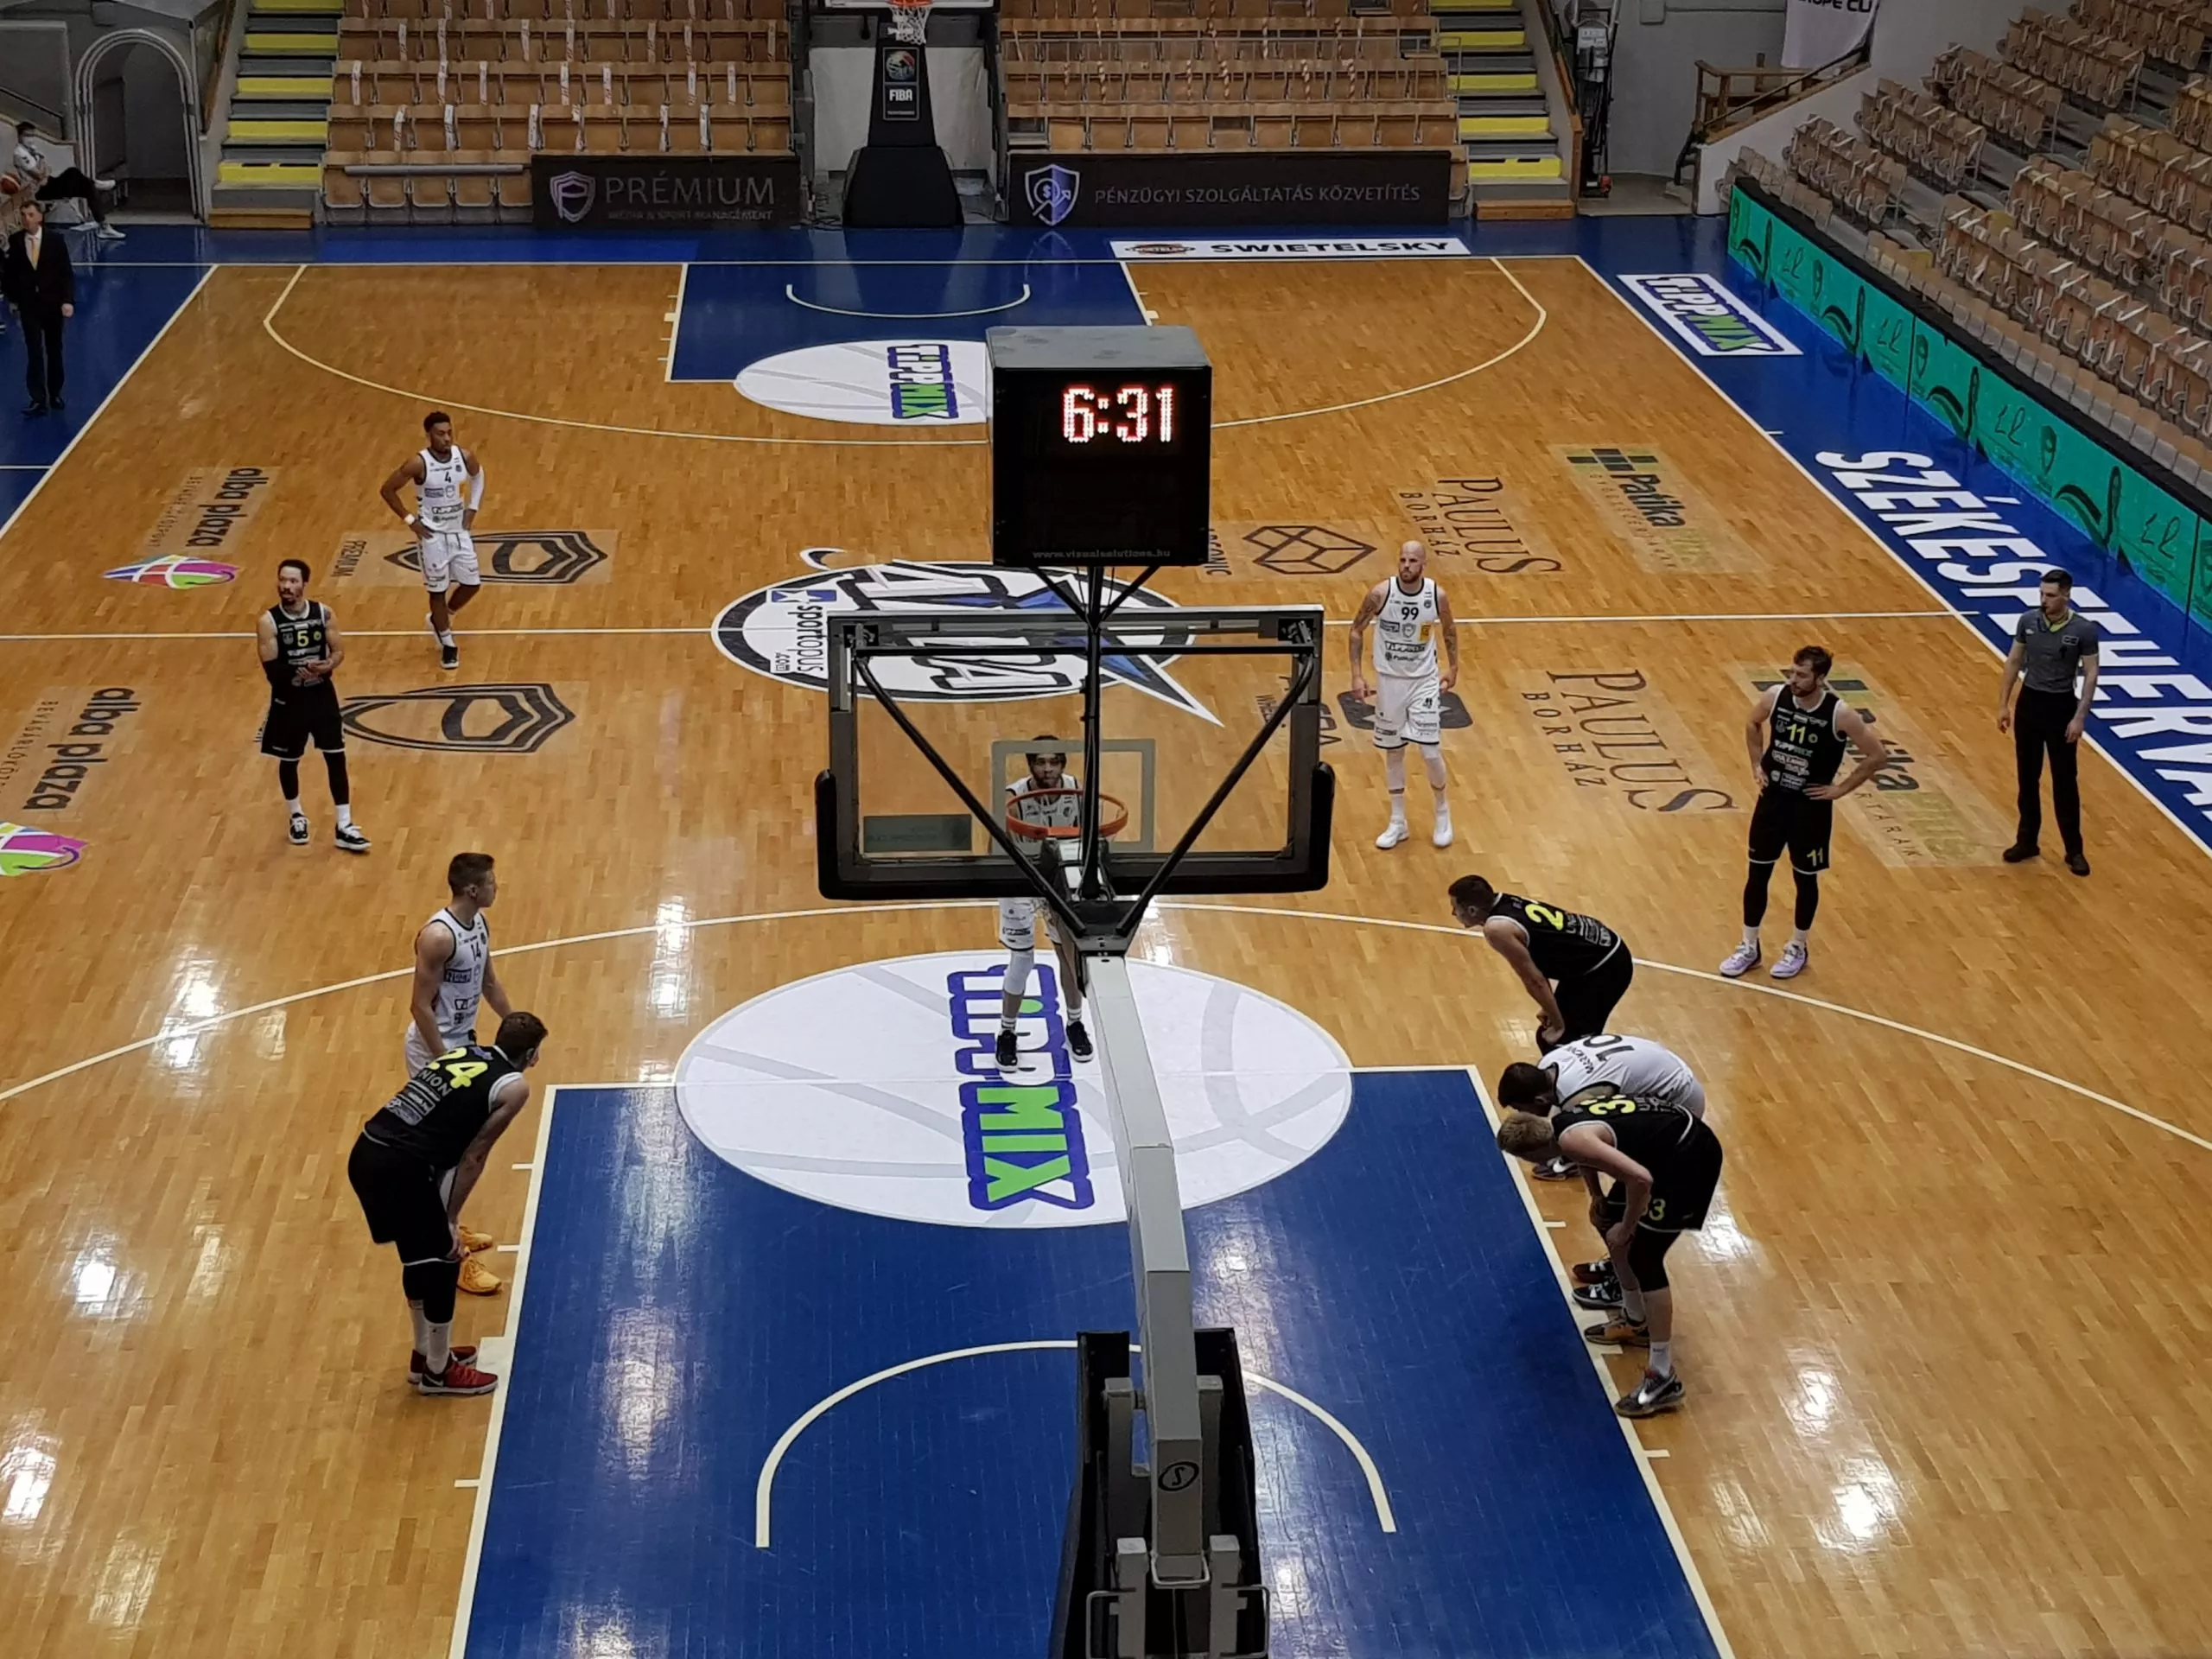 Alba Regia Sportcsarnok in Hungary, Europe | Basketball - Rated 3.7